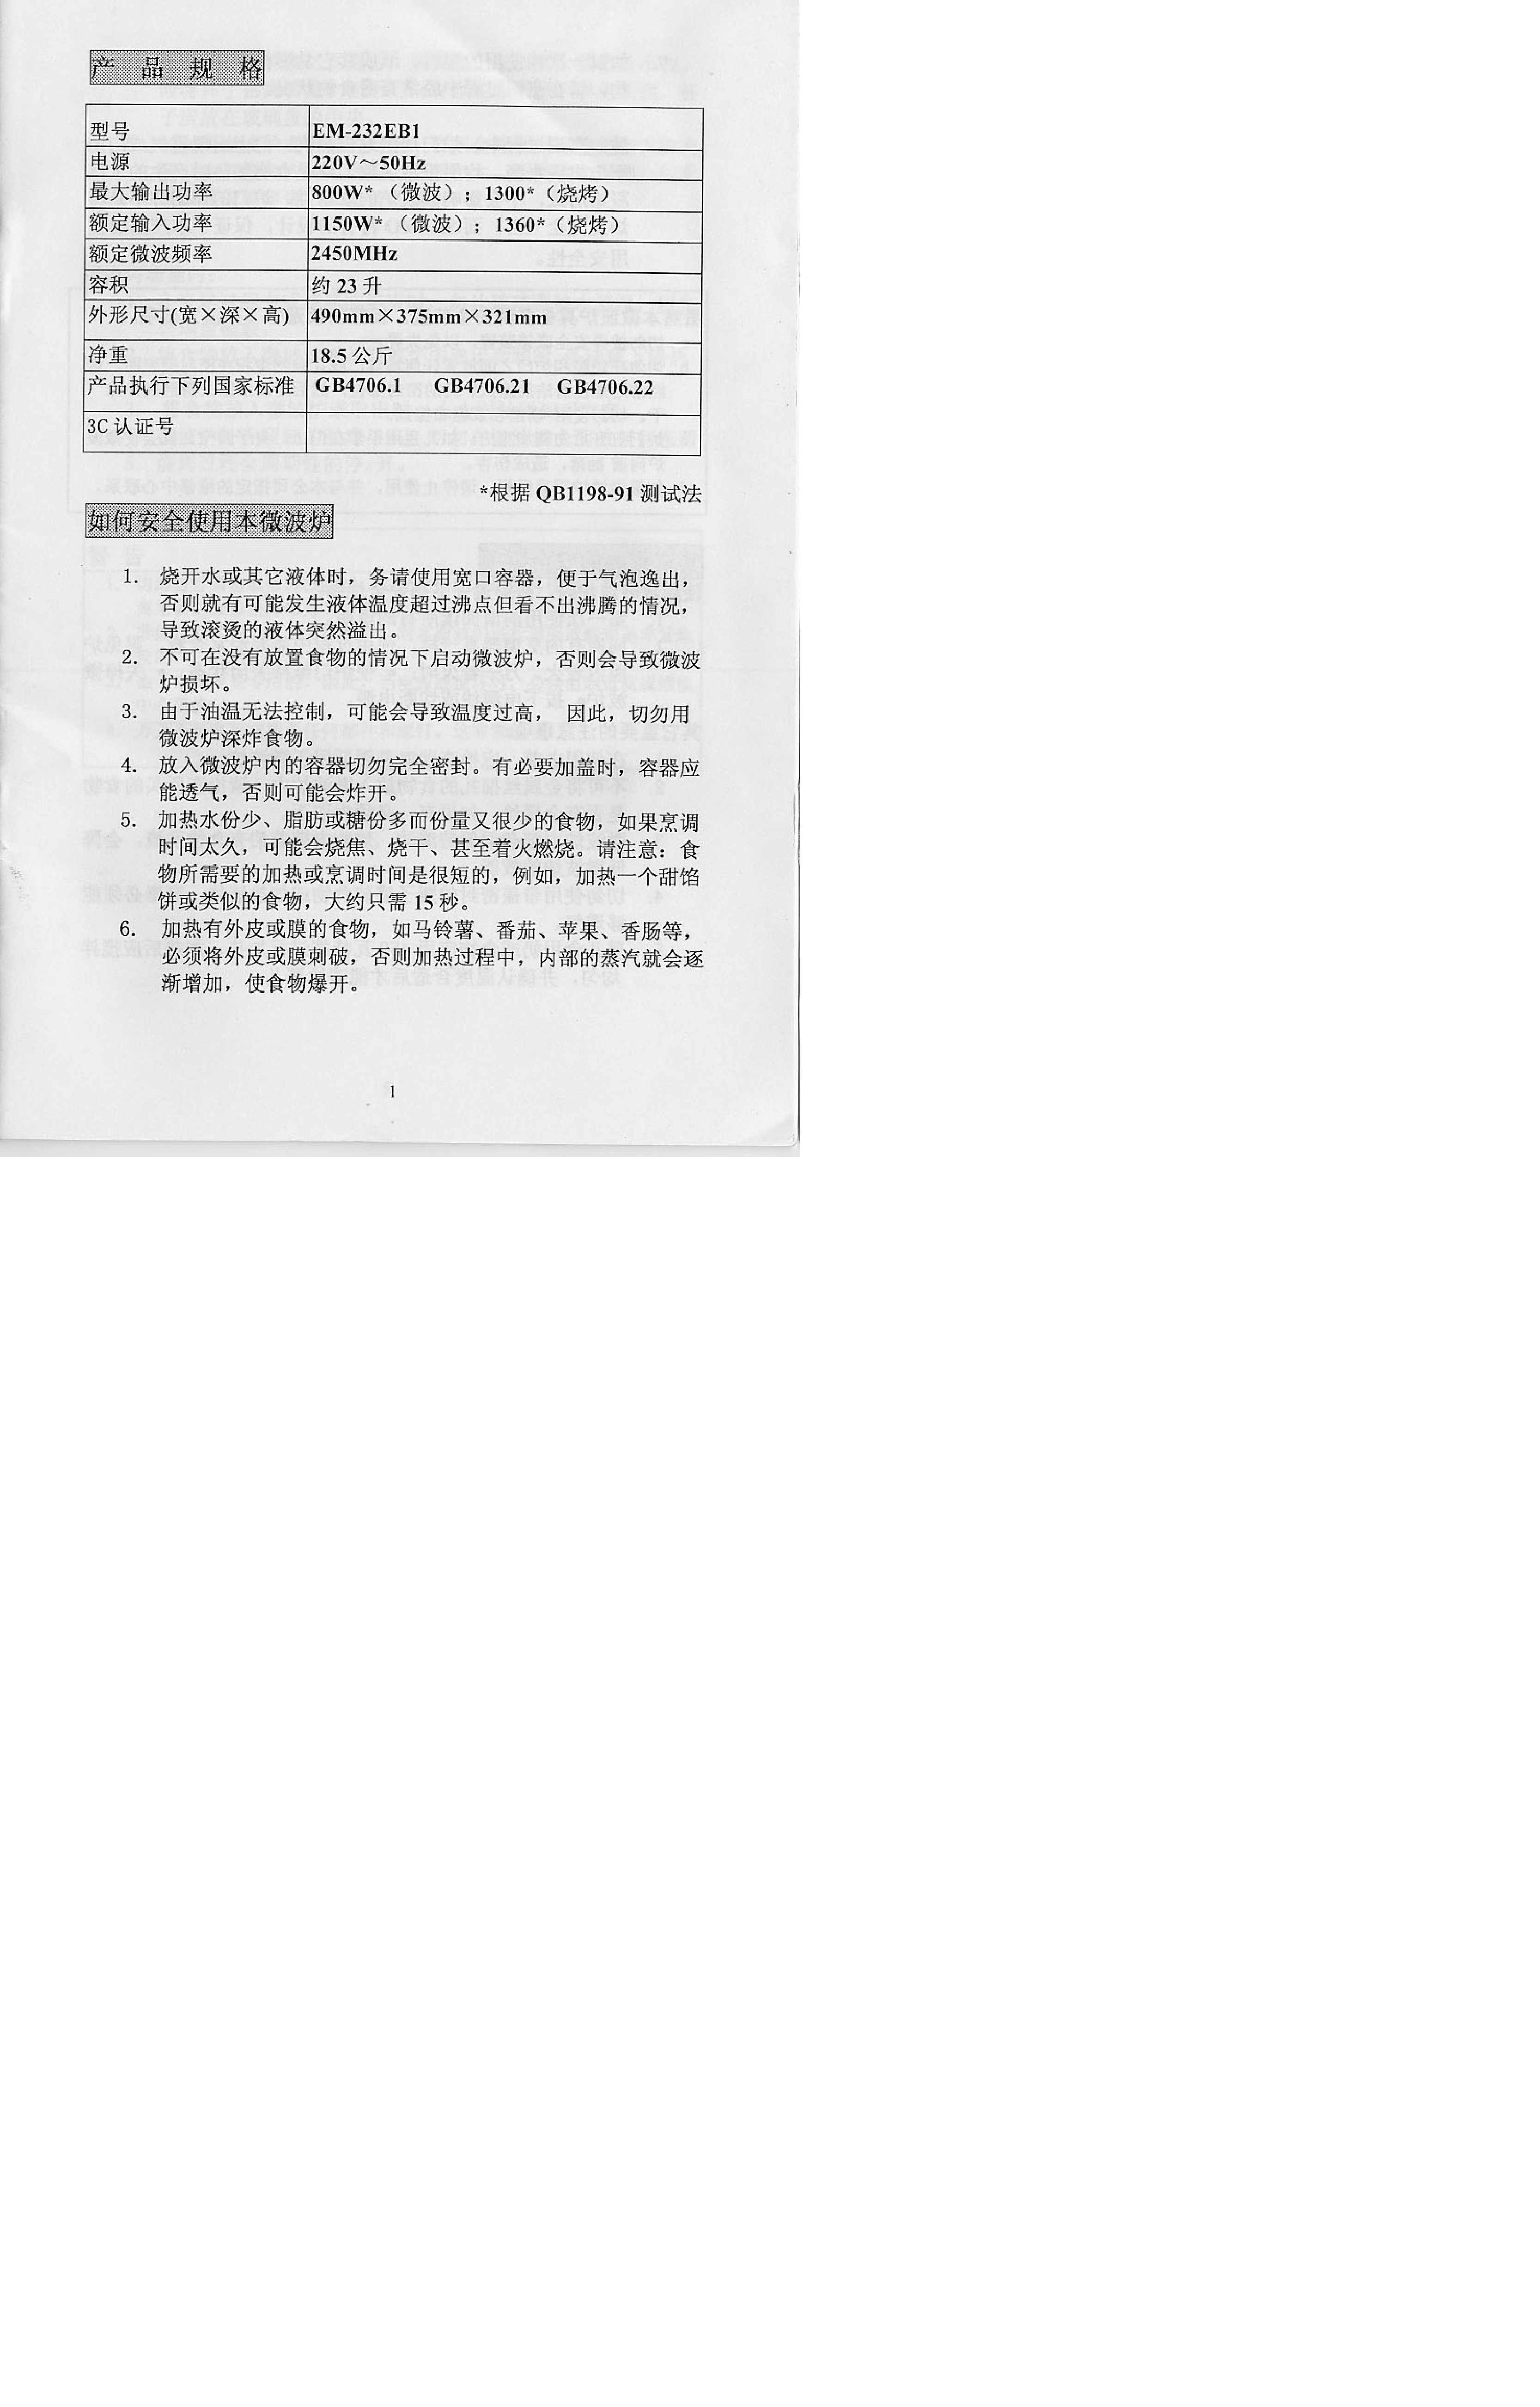 三洋 Sanyo EM-232EB1 说明书 第1页